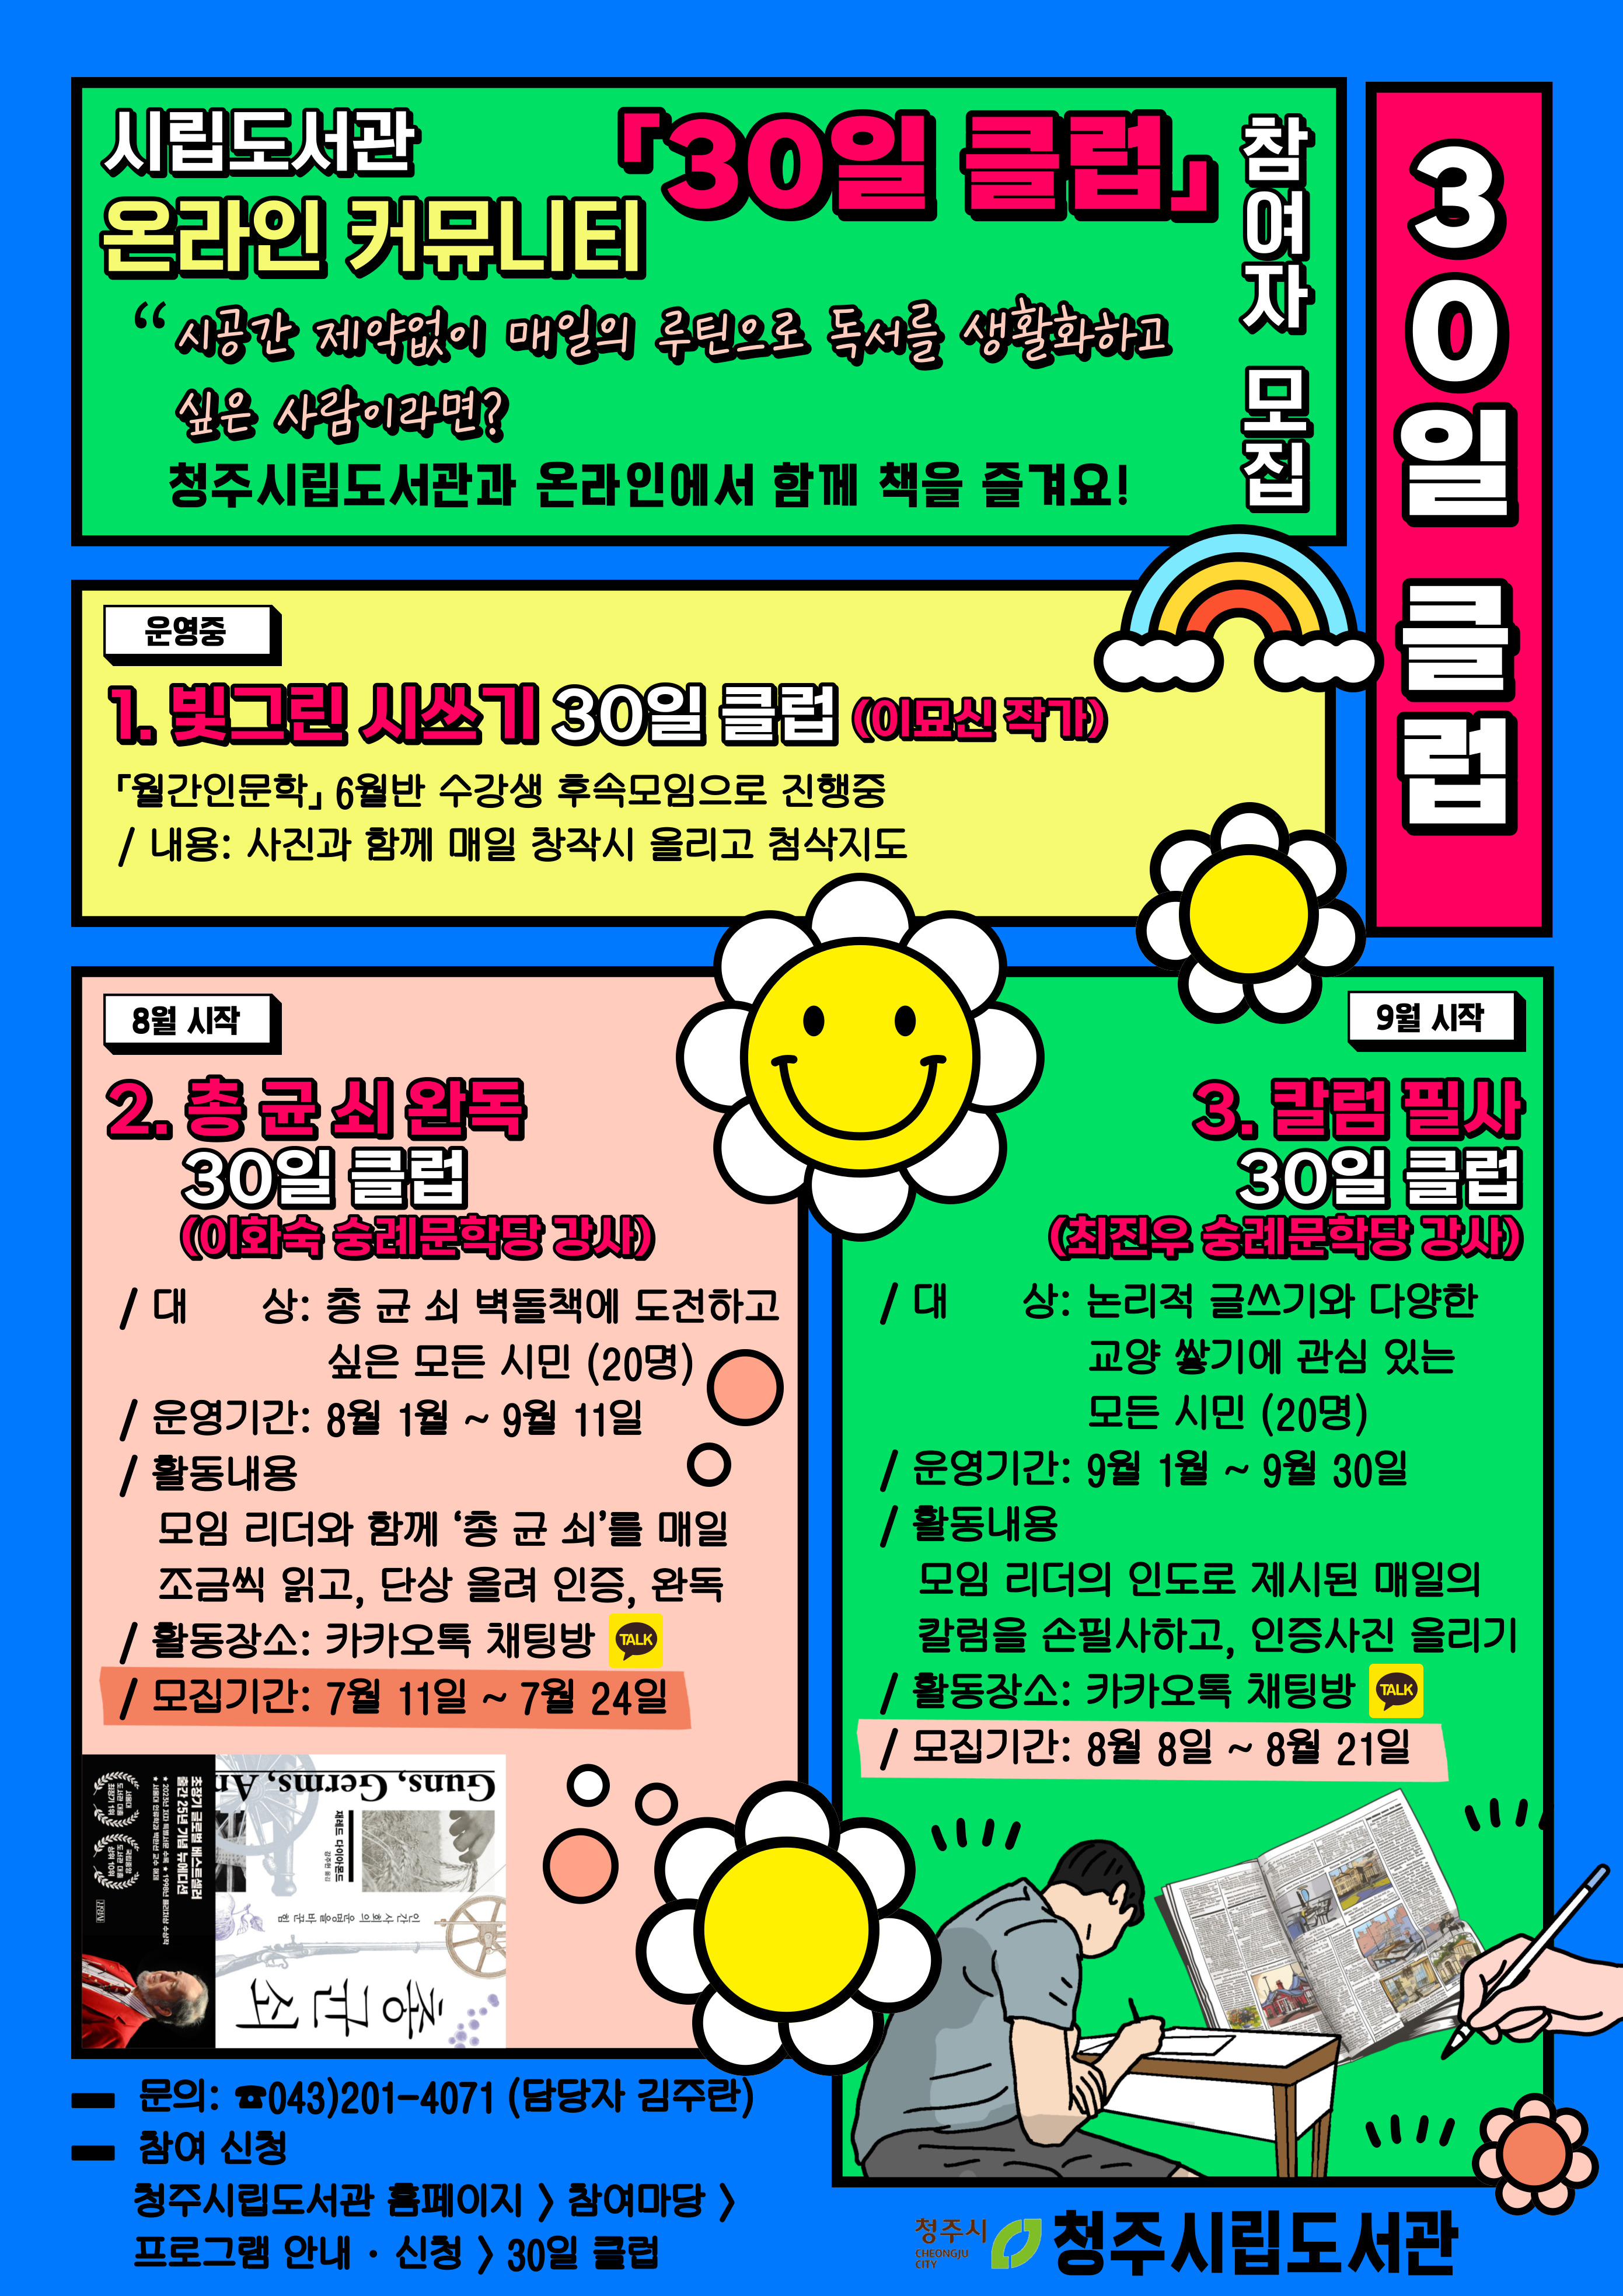 온라인독서활동커뮤니티 '30일 클럽' 참여자 모집